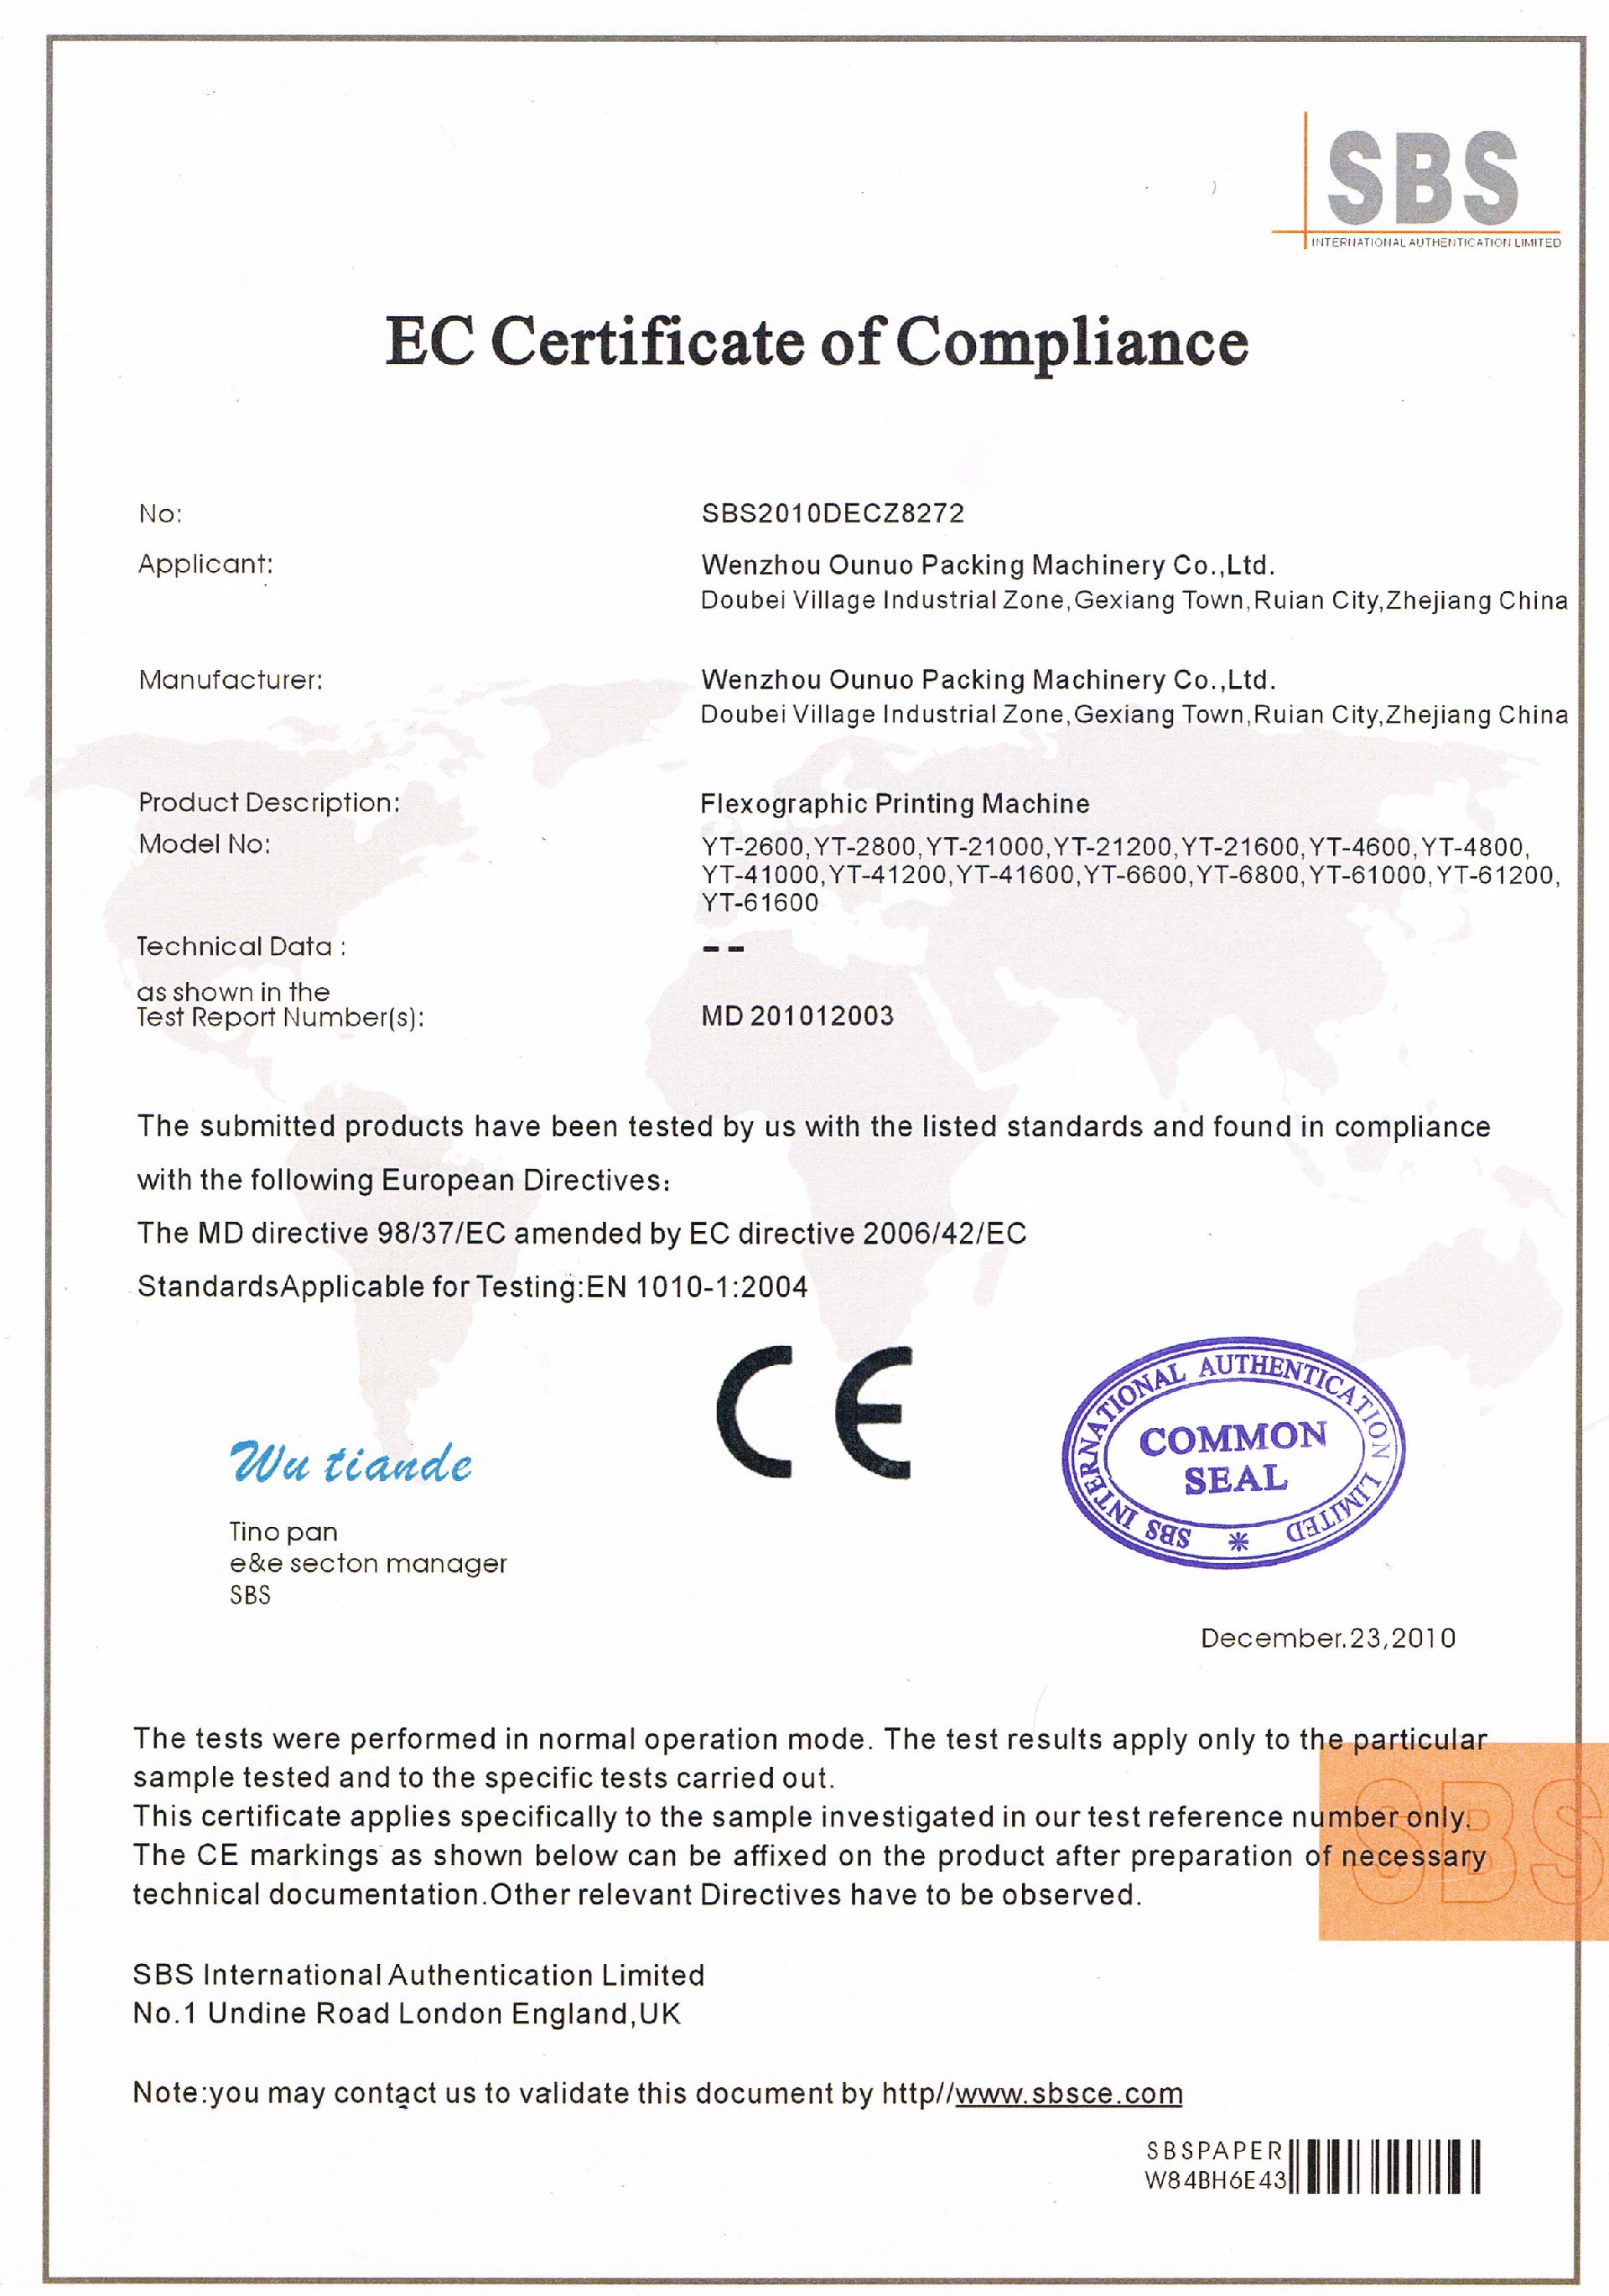 印刷机CE证书